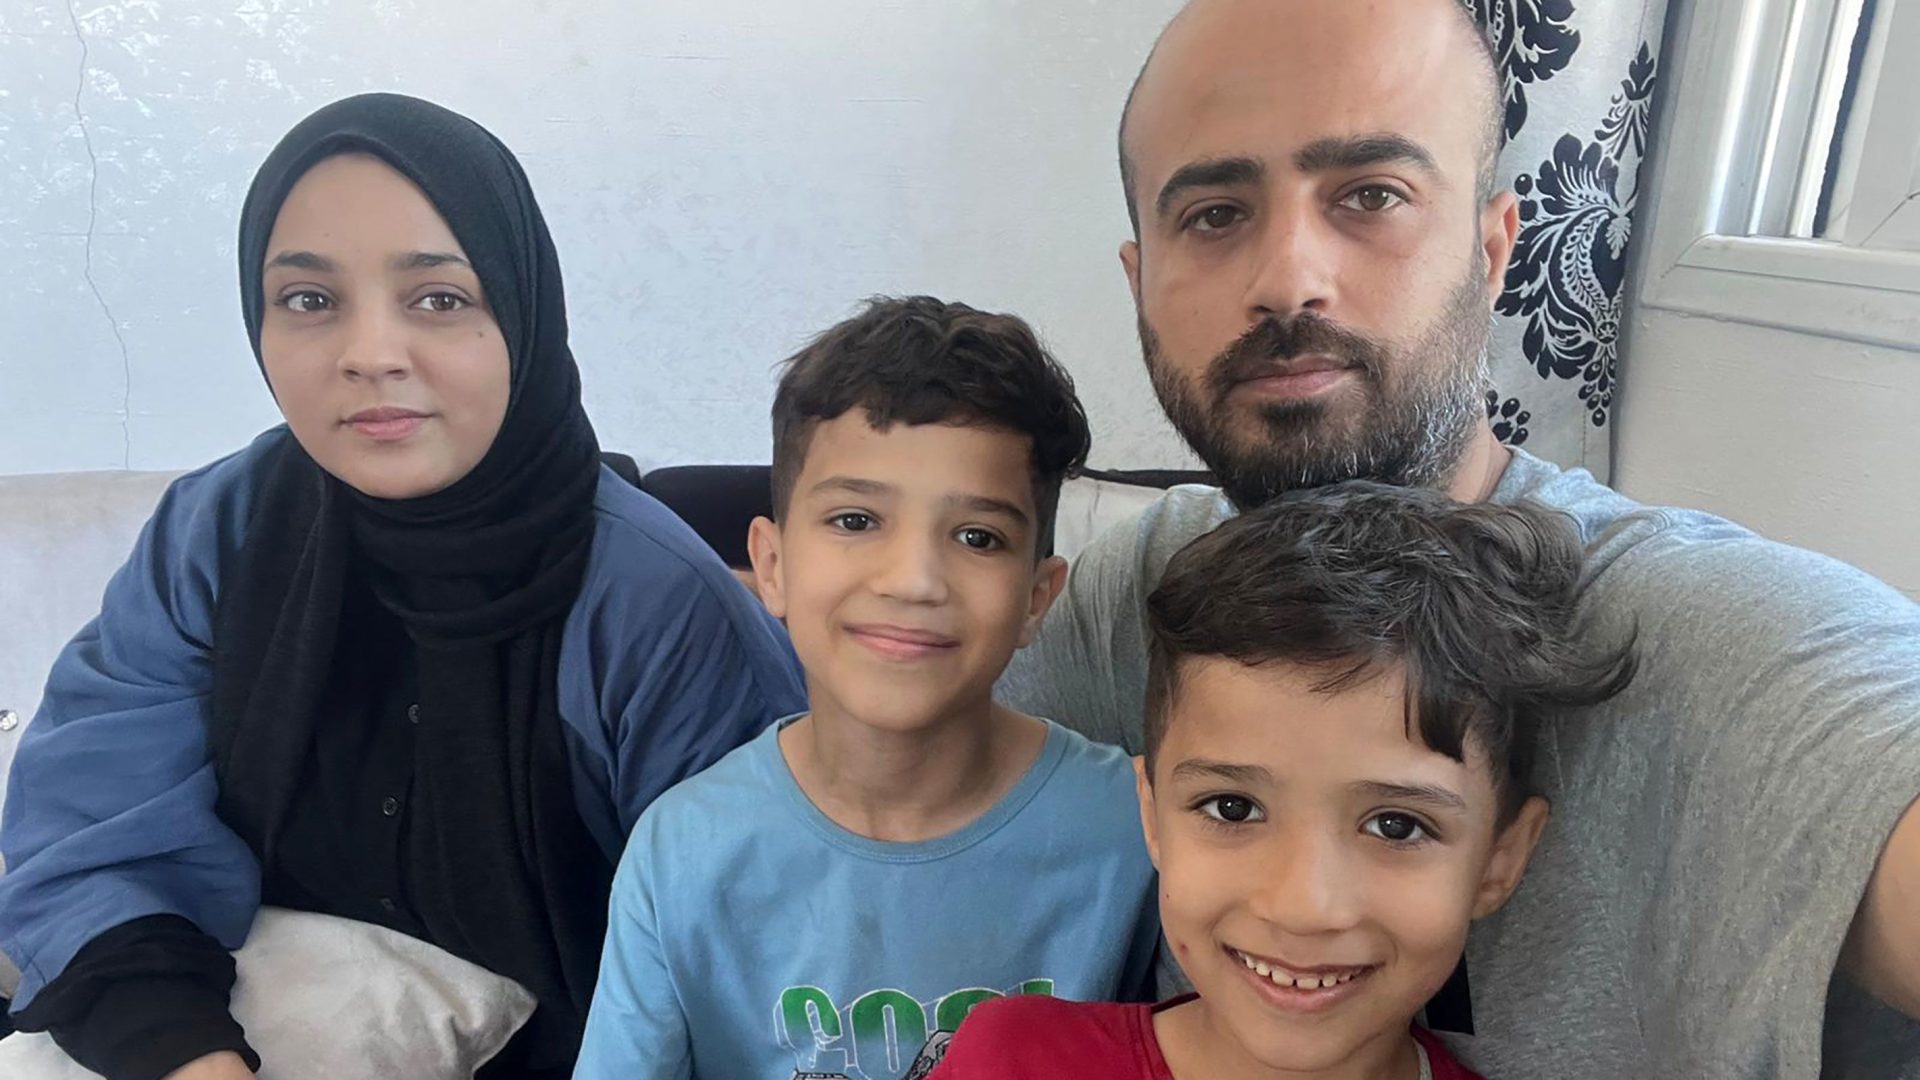 Povestea cutremurătoare a unui jurnalist CNN blocat în Fâșia Gaza: „O să murim astăzi? - asta mă întreabă fiul meu în fiecare zi”